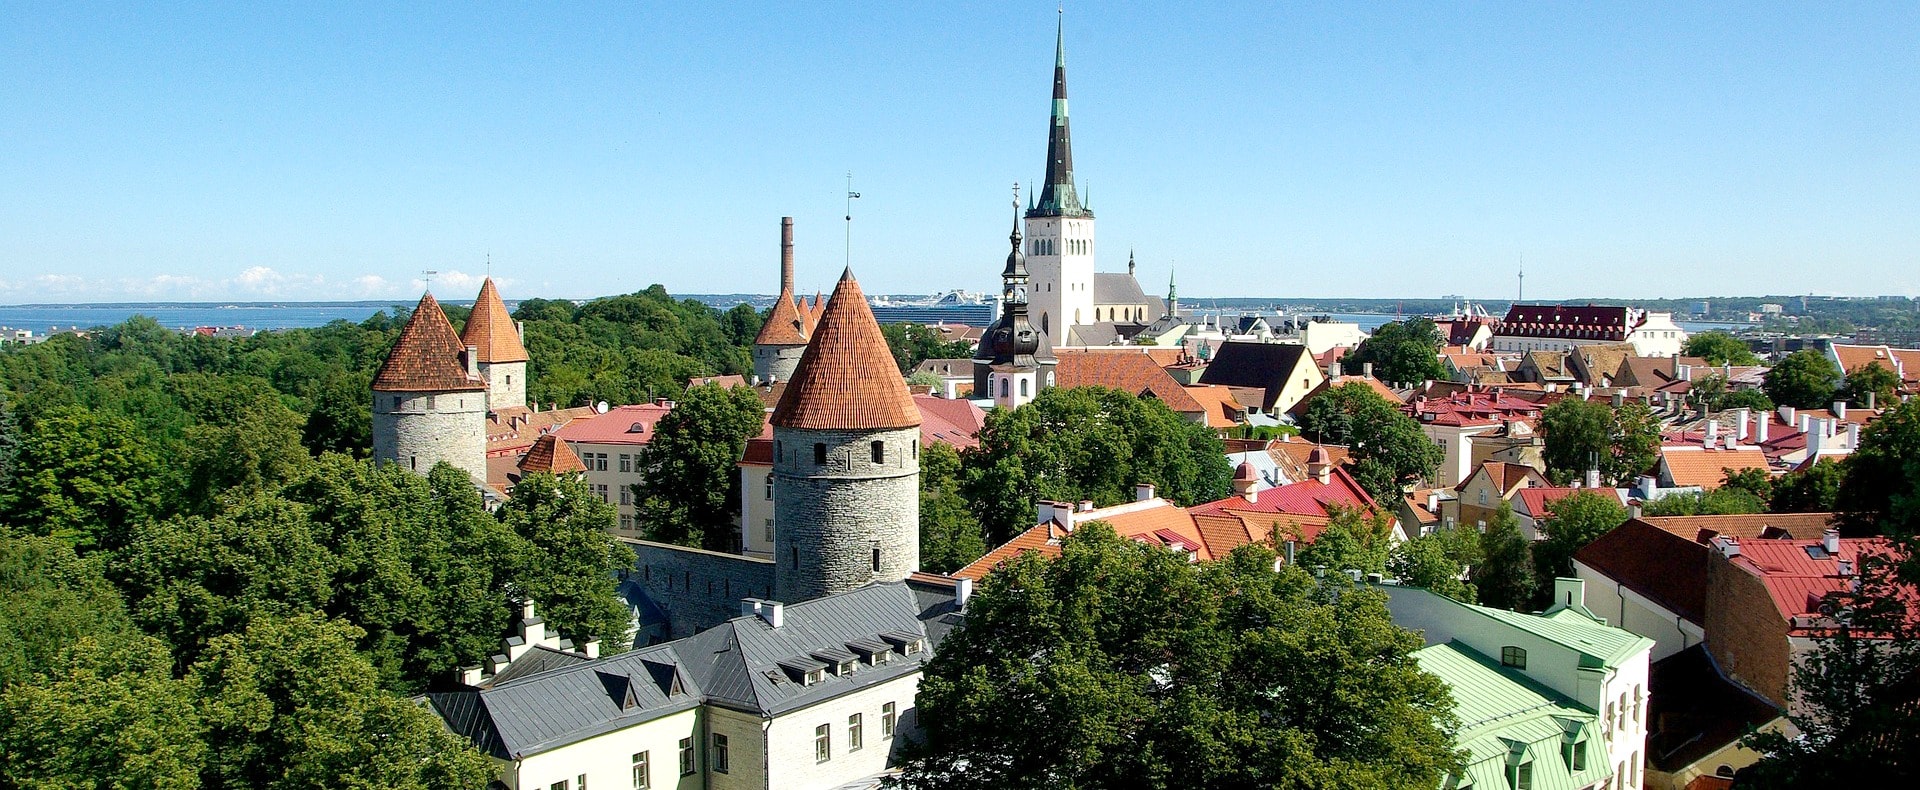 Tallinn Old Town, Tallinn, Estonia